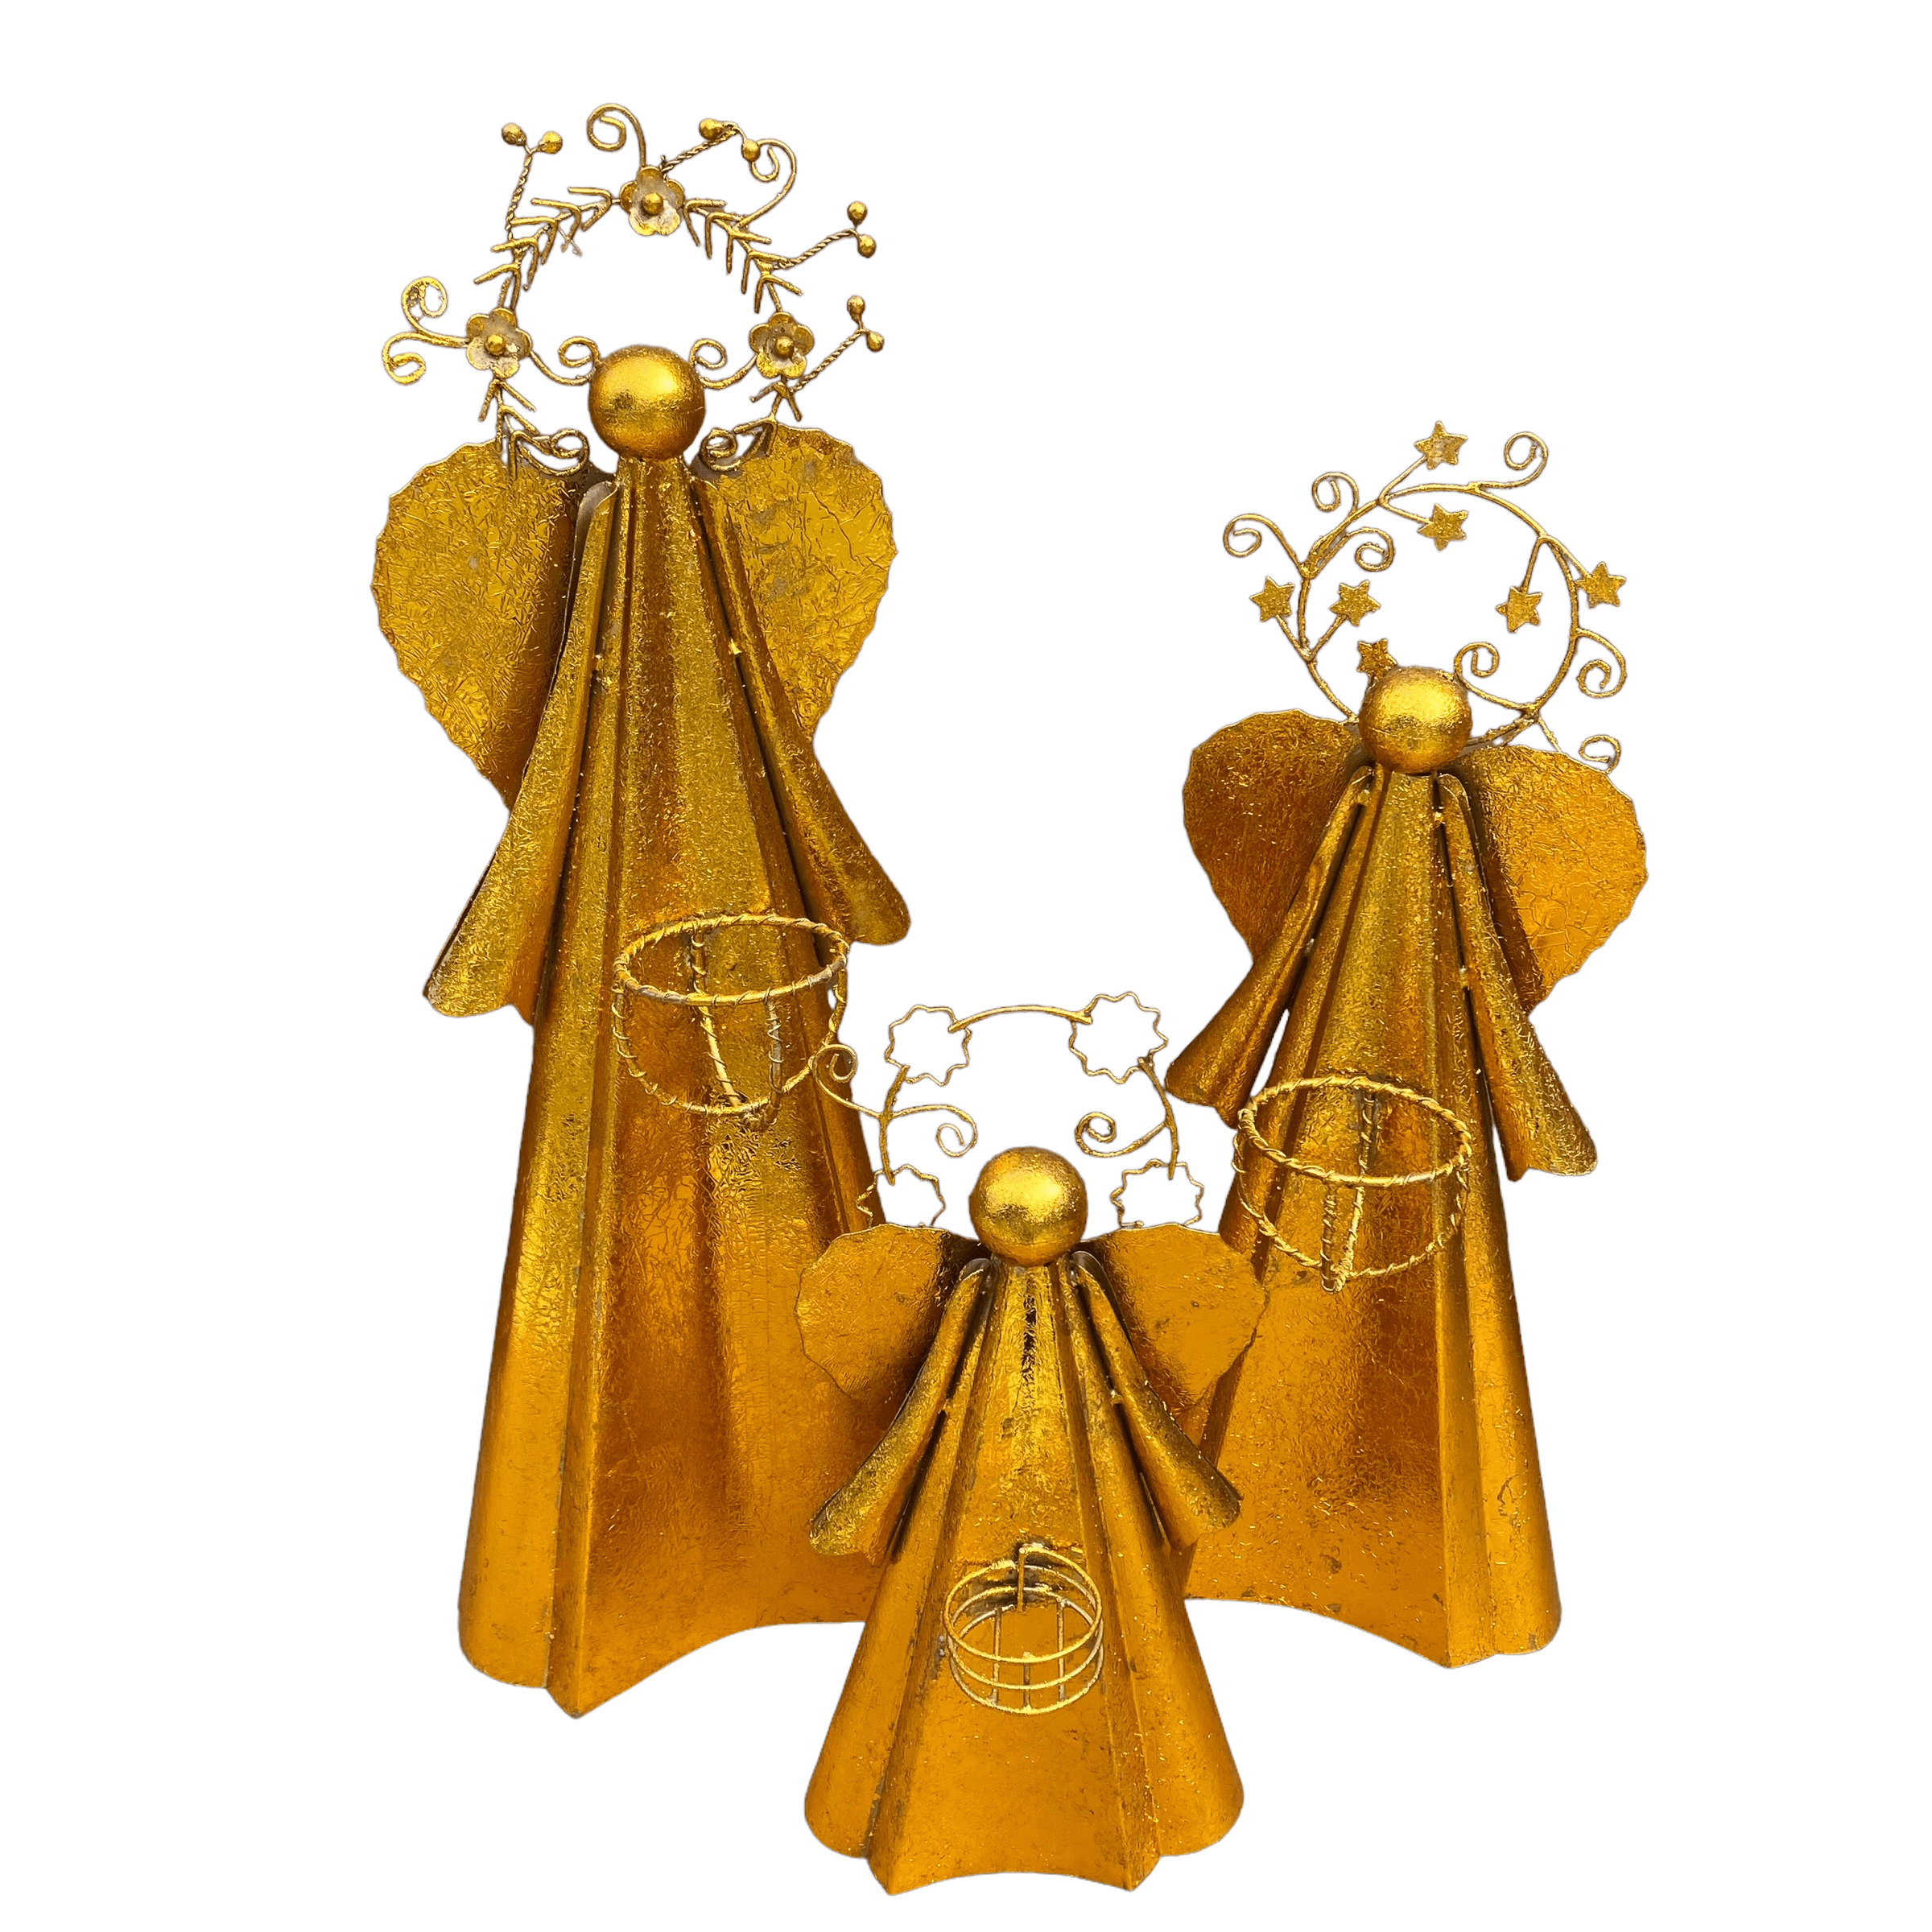 Gold Archangels Angel Votive Holder Figurine